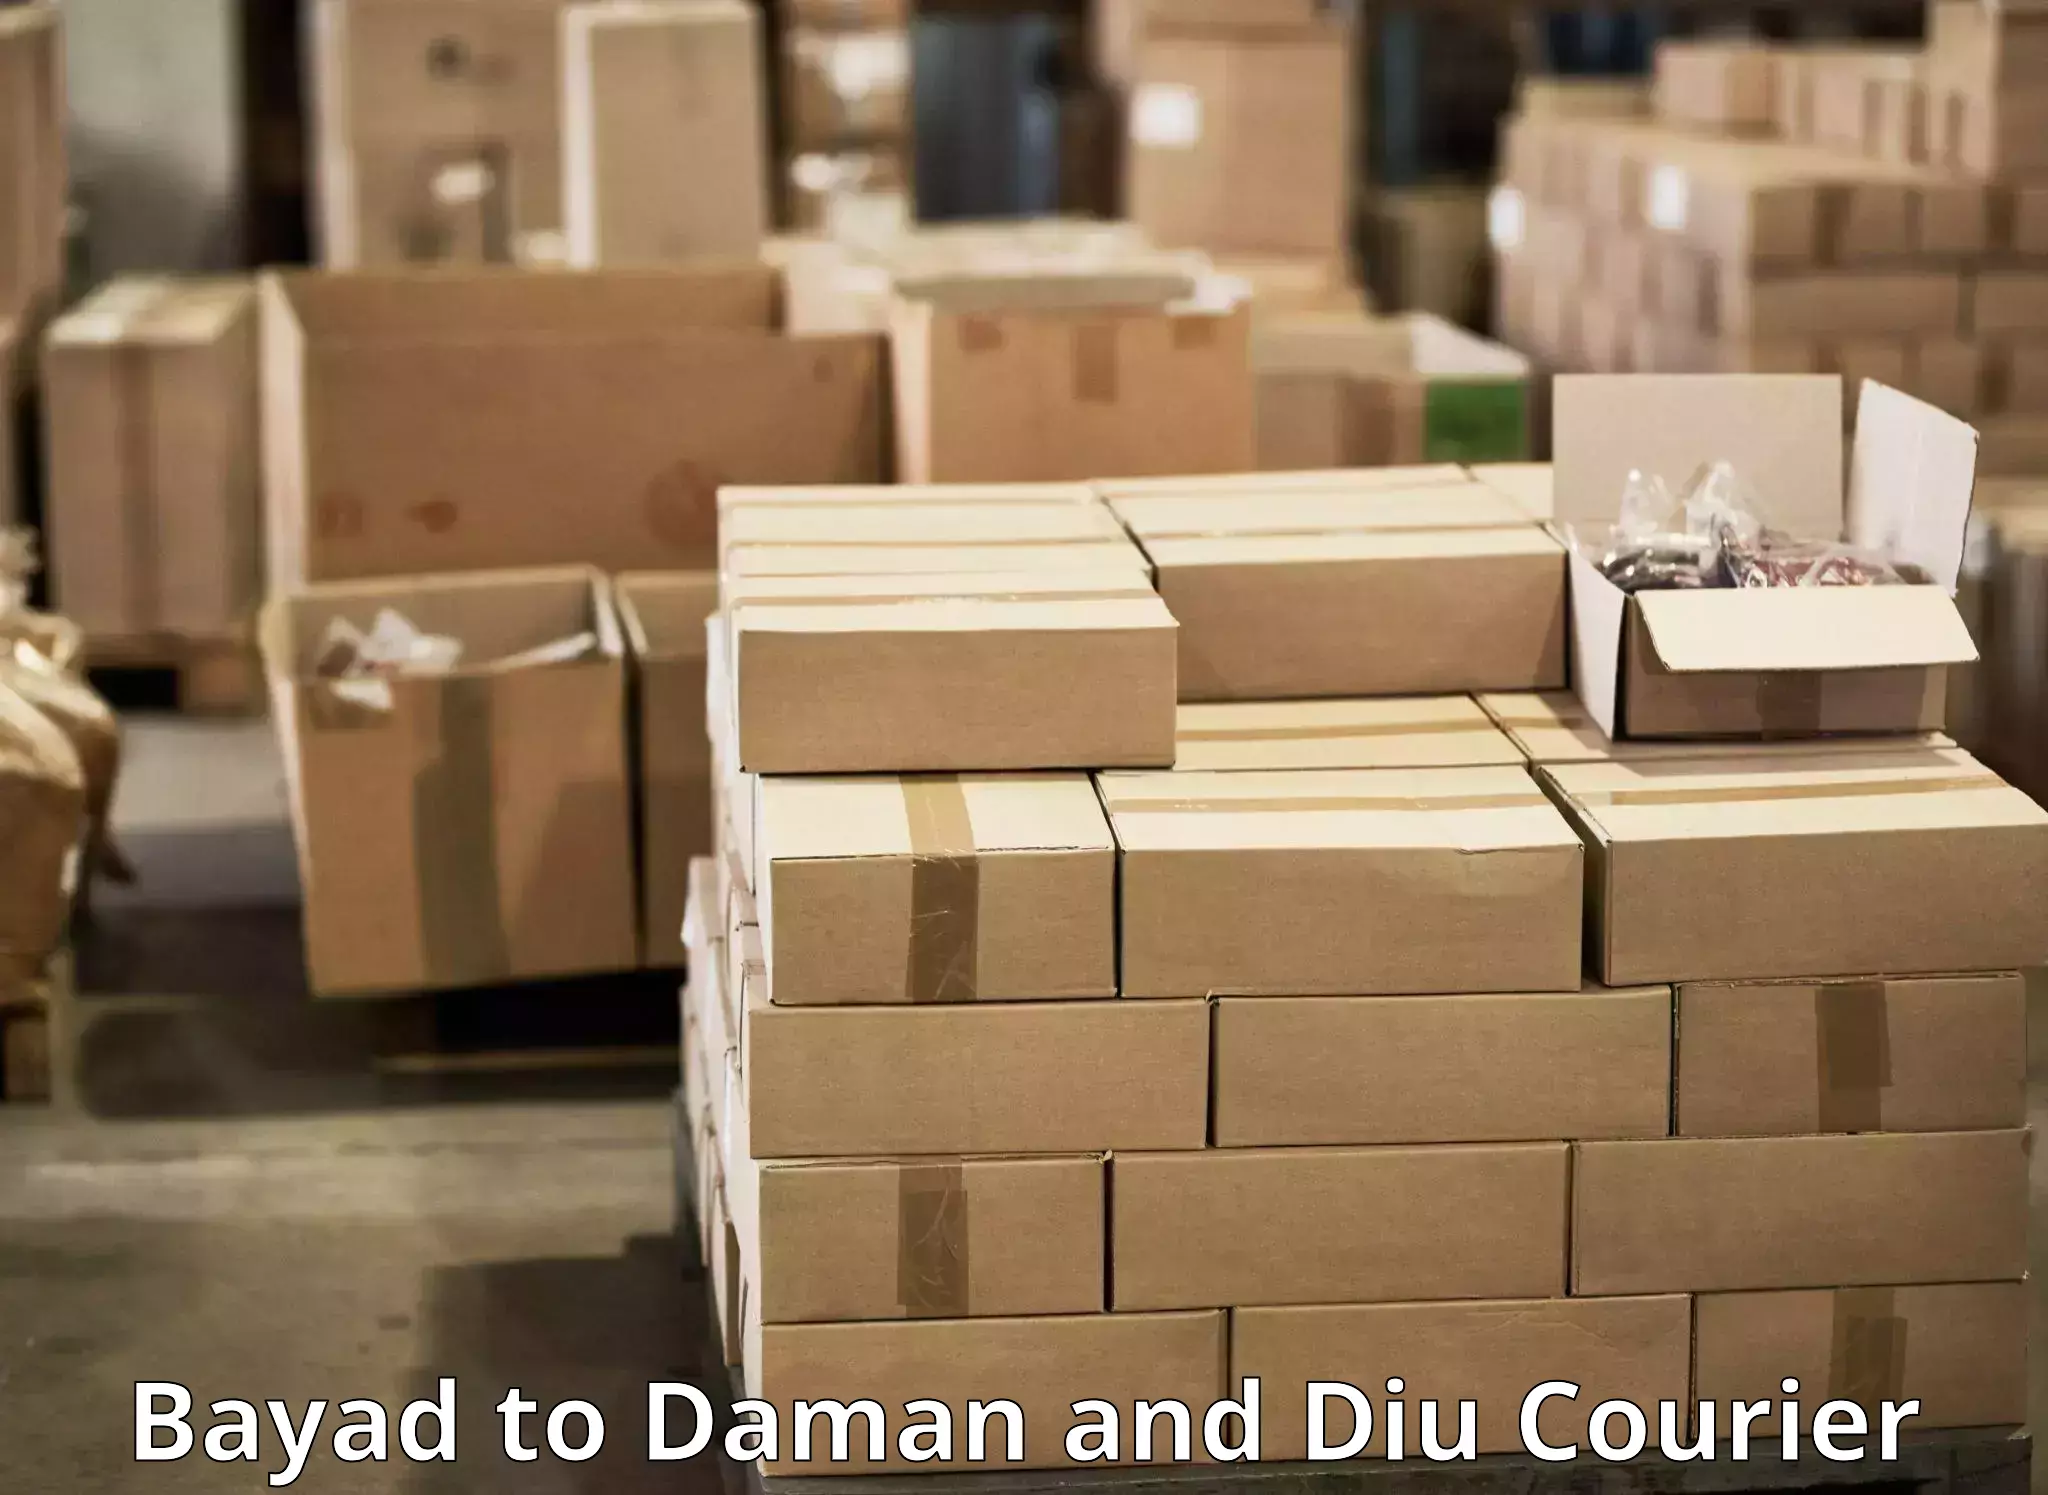 Express courier facilities Bayad to Daman and Diu